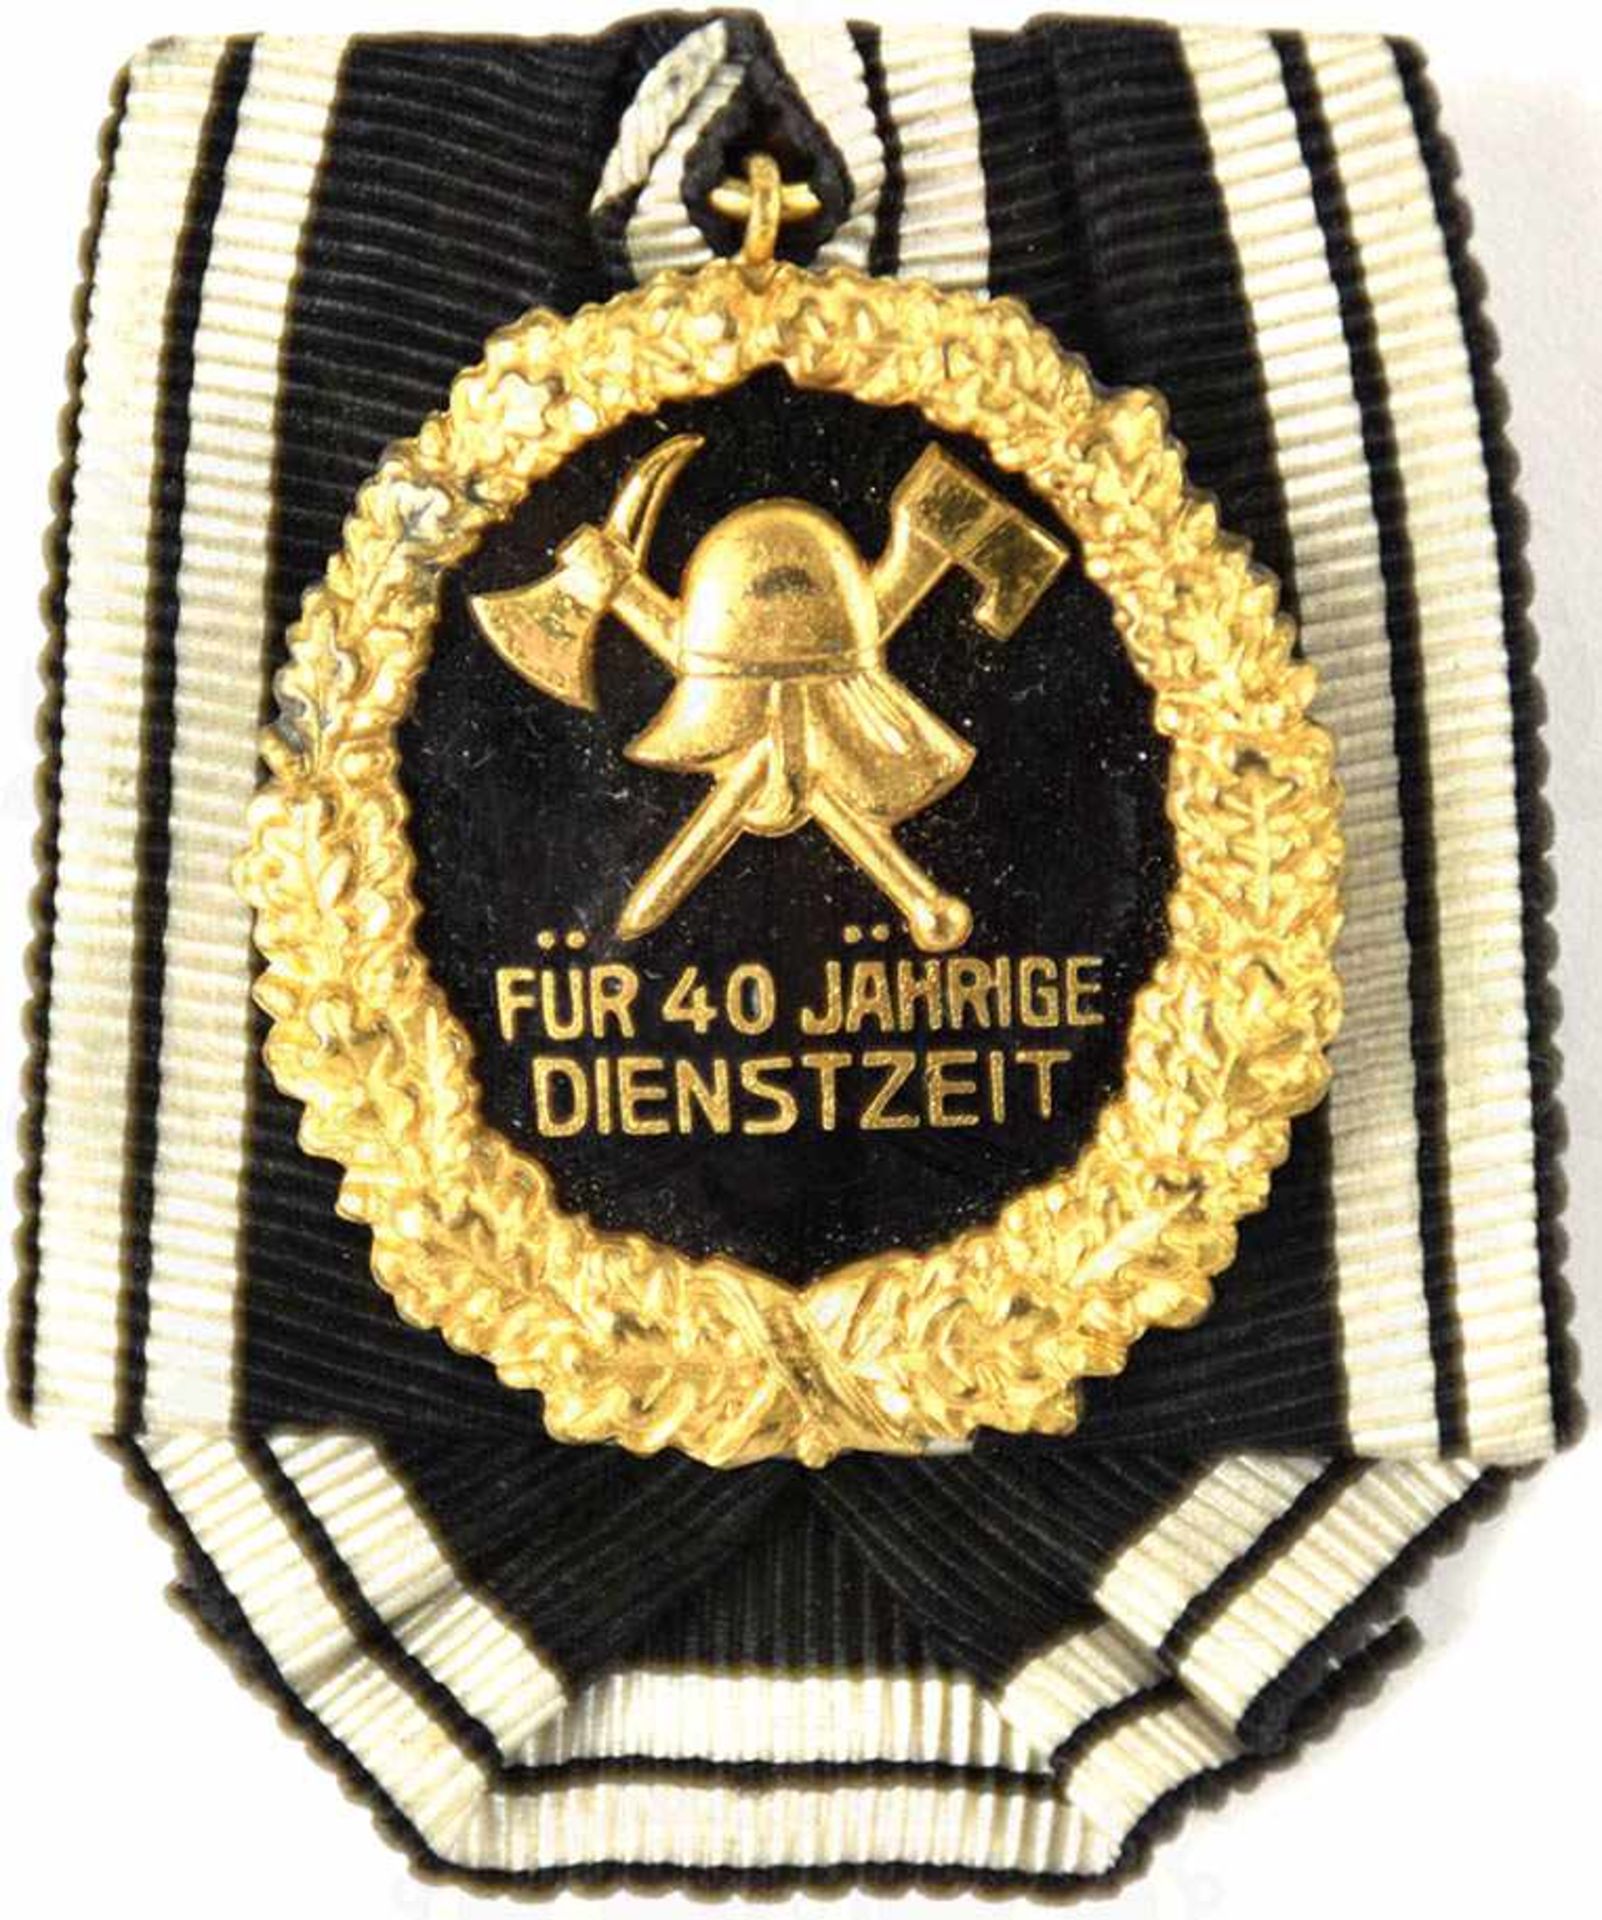 FEUERWEHR-EHRENZEICHEN FÜR 40 JAHRE, Landes-Feuerwehrverband Freistaat Preußen, 1. Form ab 1922,